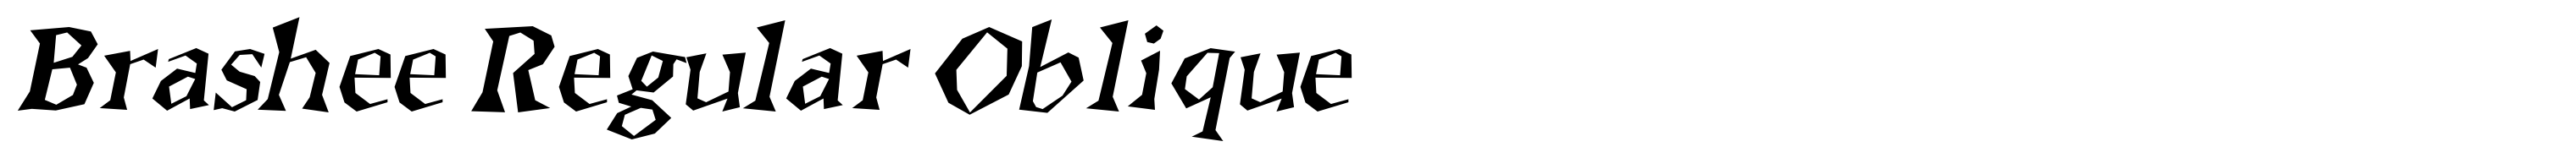 Brashee Regular Oblique